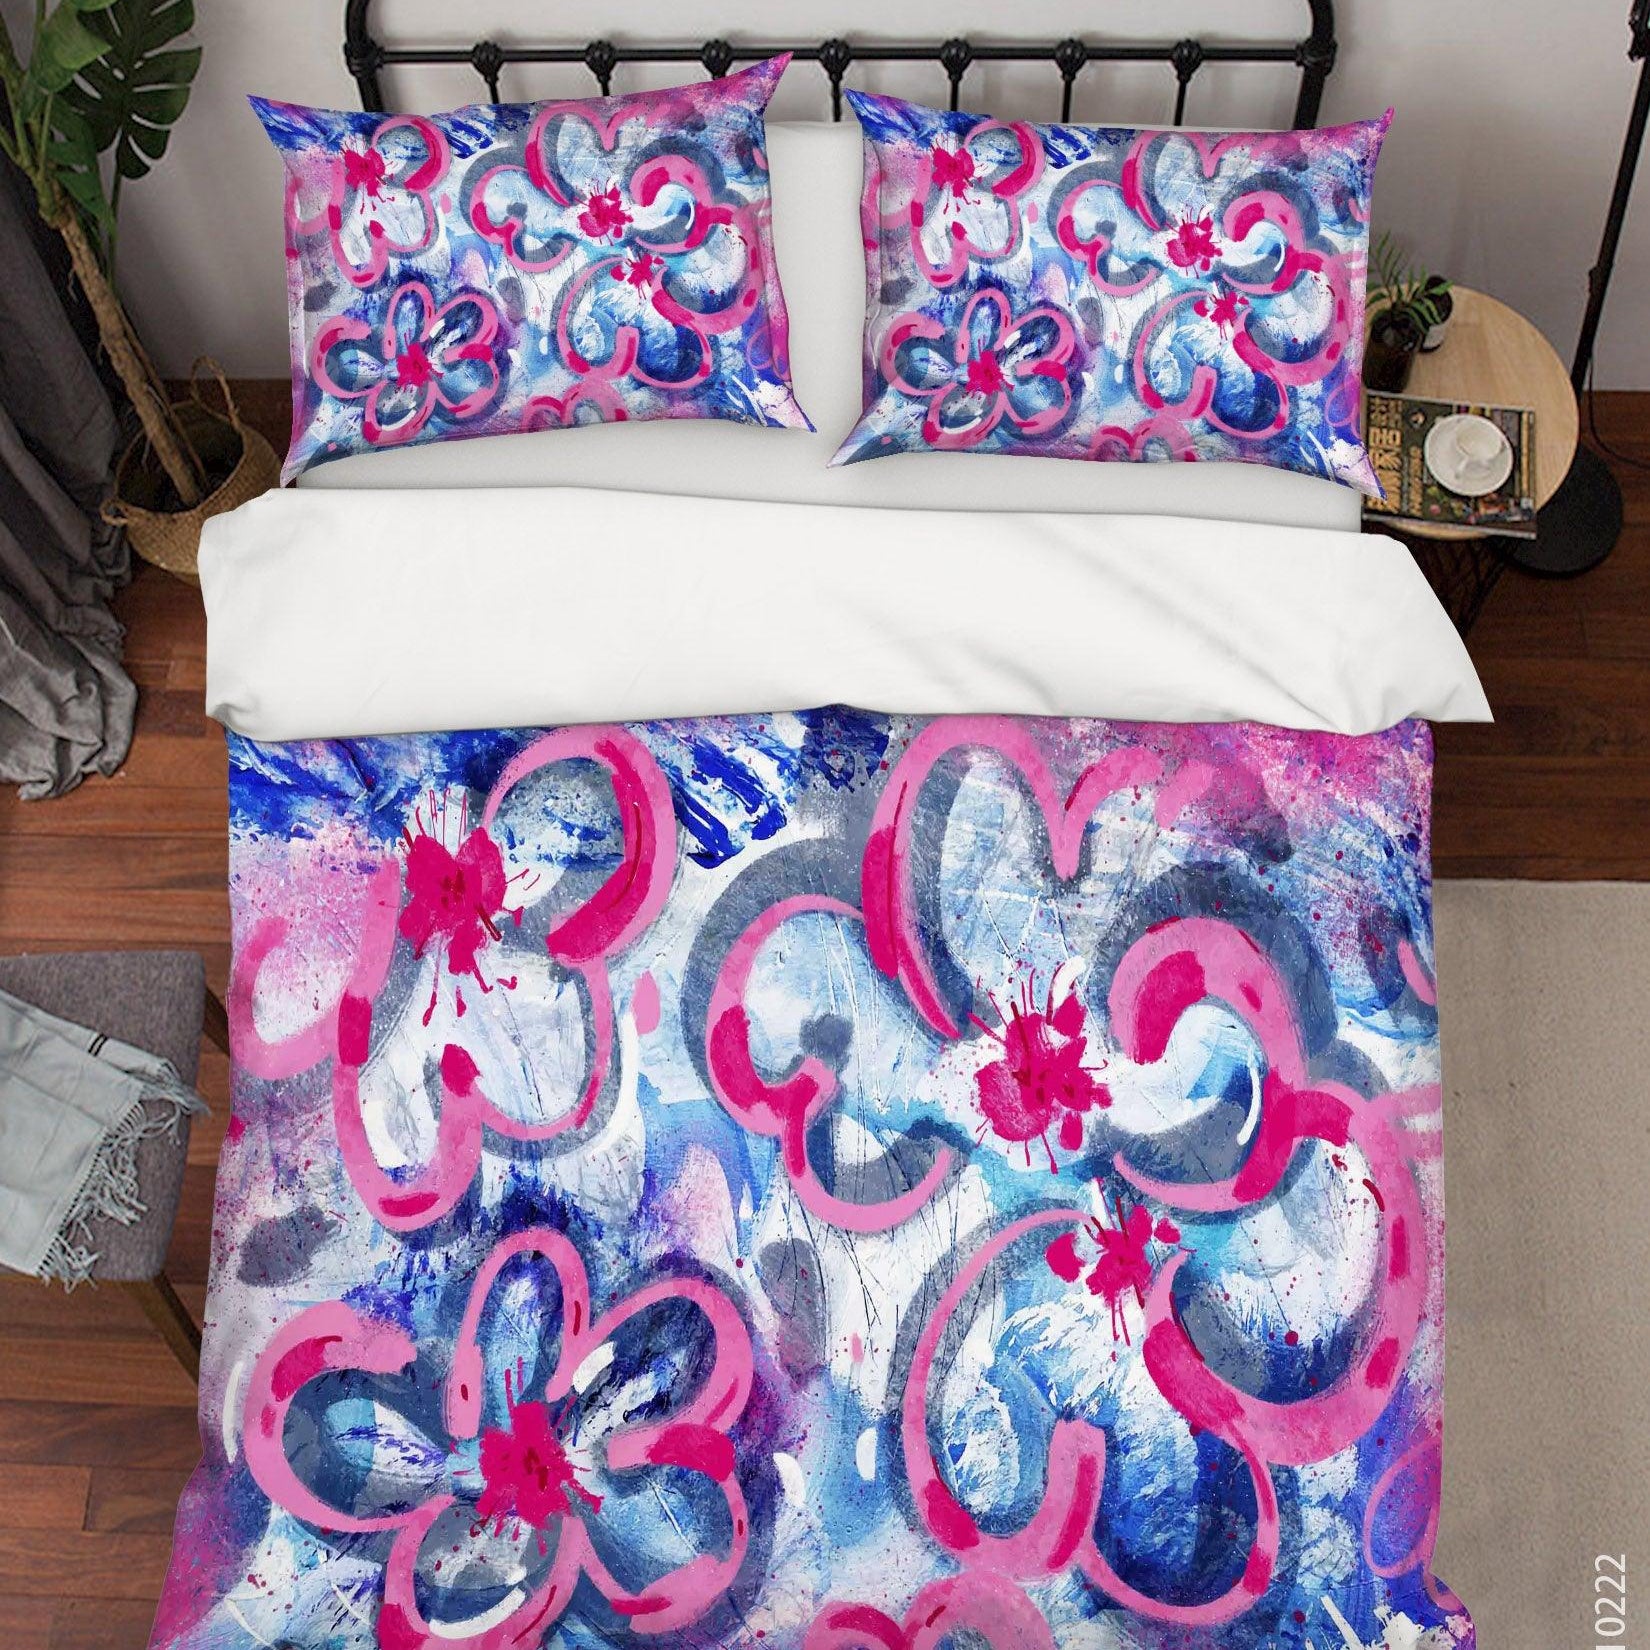 3D Abstract Color Floral Quilt Cover Set Bedding Set Duvet Cover Pillowcases 160- Jess Art Decoration